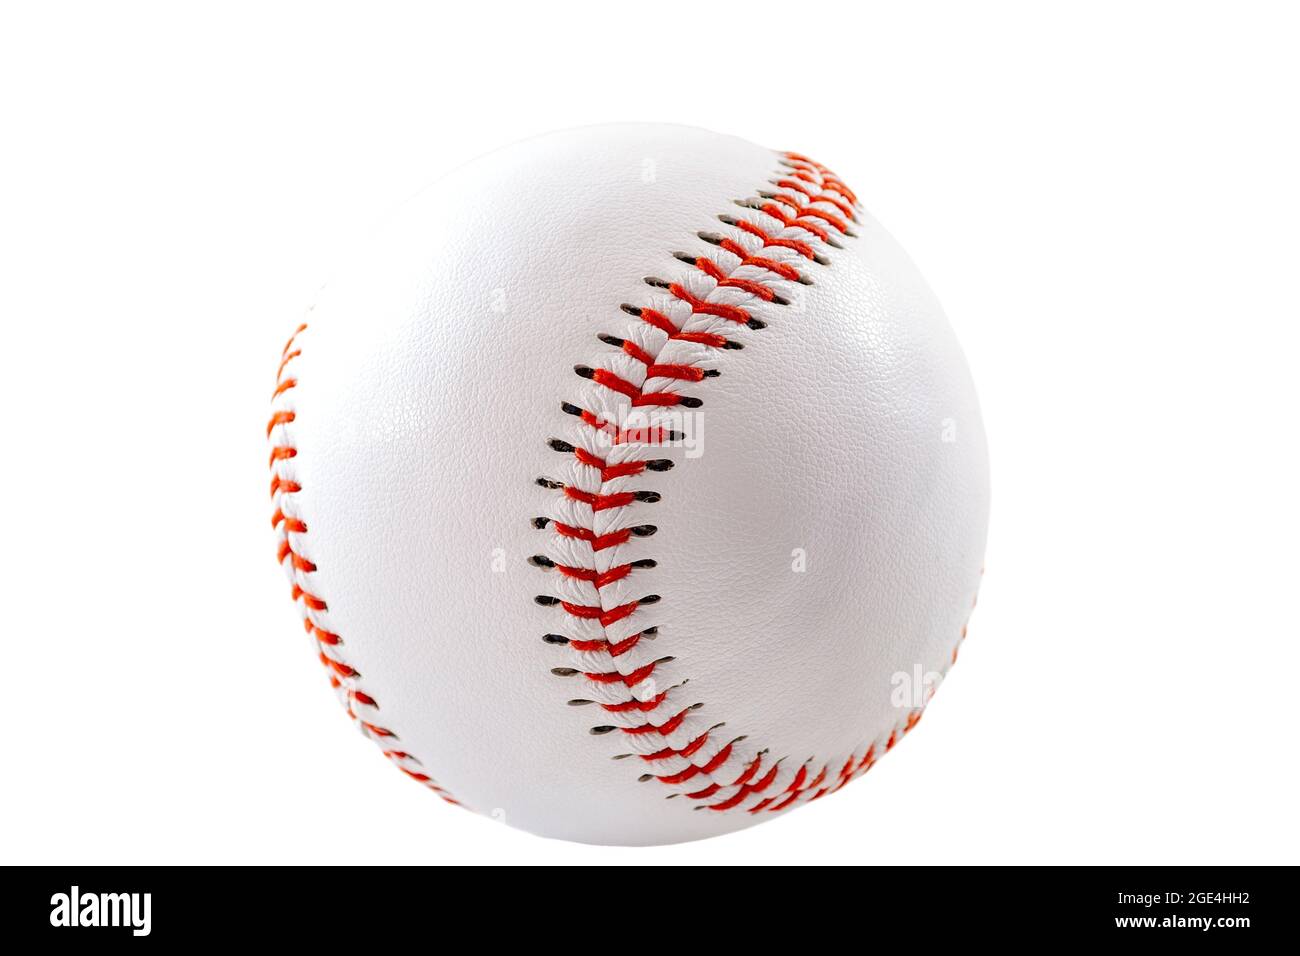 Sportausrüstung und amerikanisches Freizeitkonzept mit einem weißen Lederball, der im Baseballspiel verwendet wird, isoliert auf weißem Hintergrund mit einem Clip Stockfoto